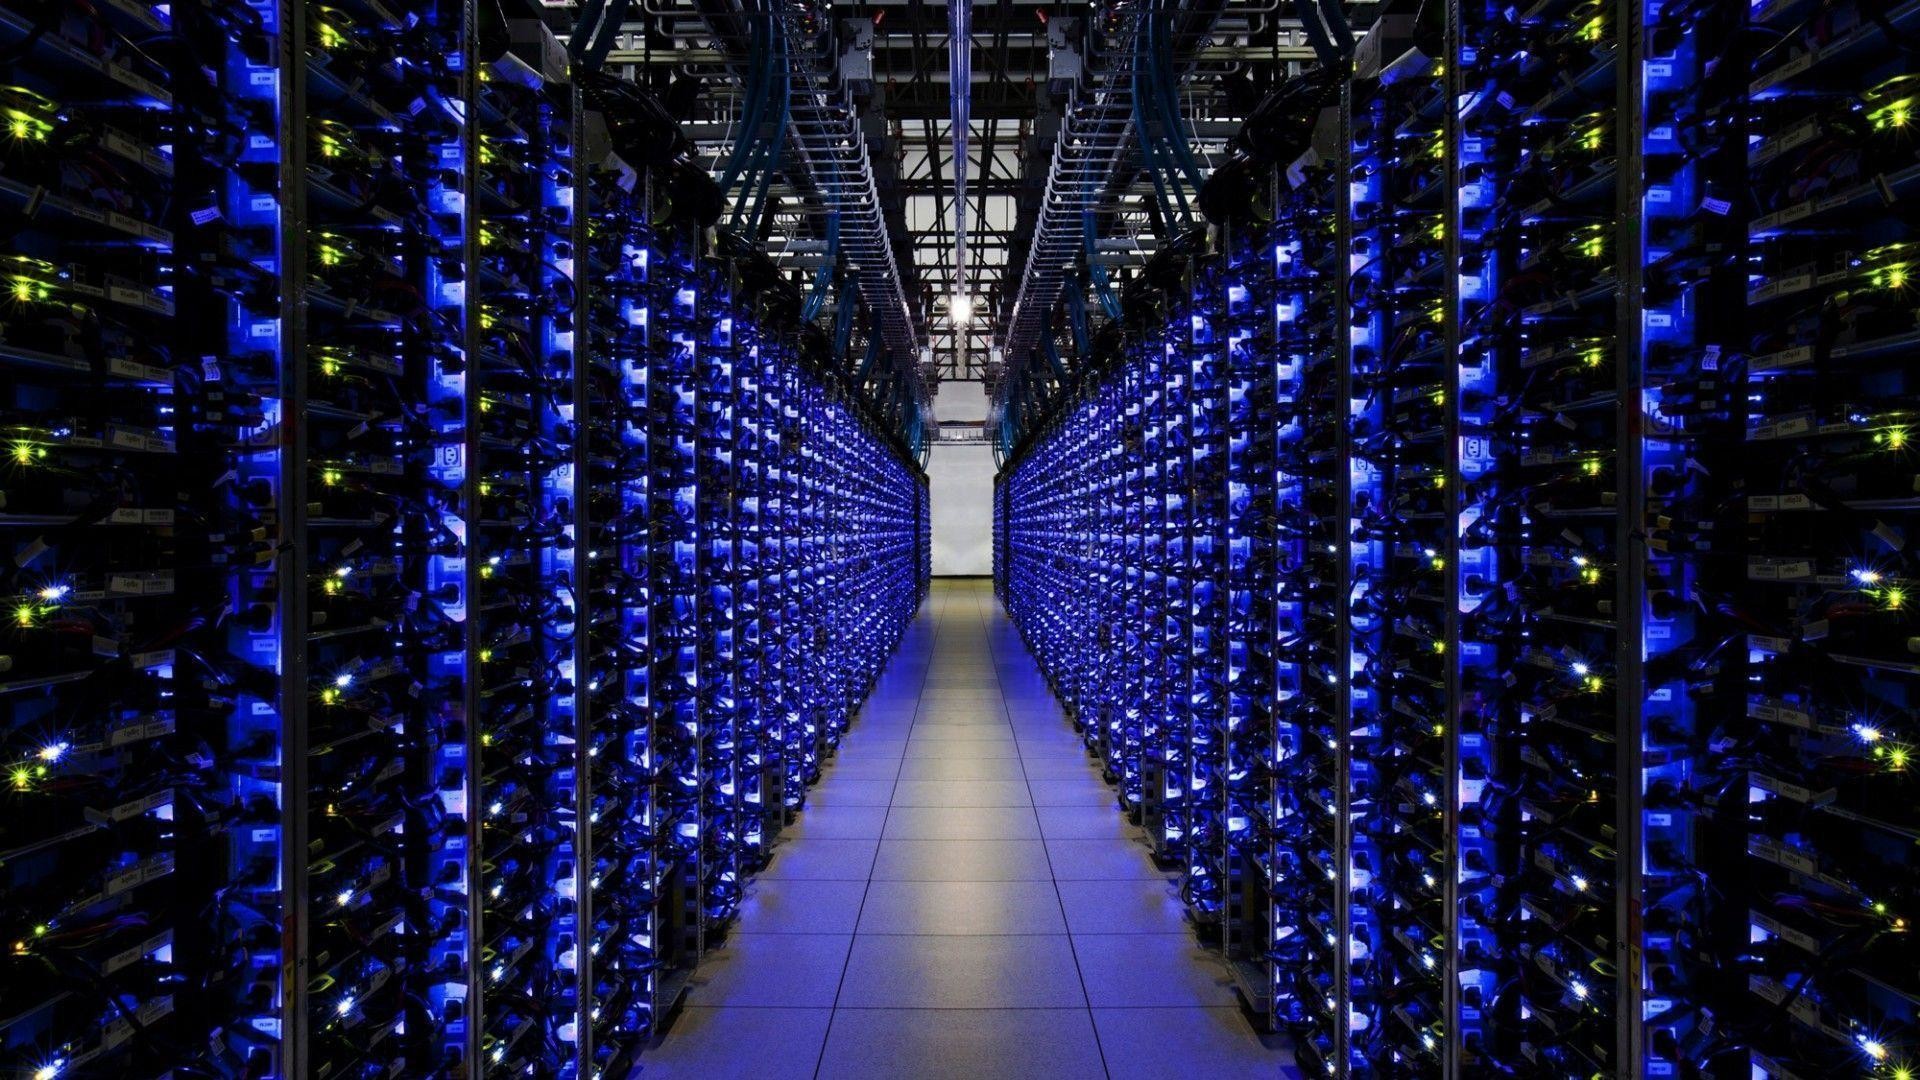 Google Data Center Wallpaper Image